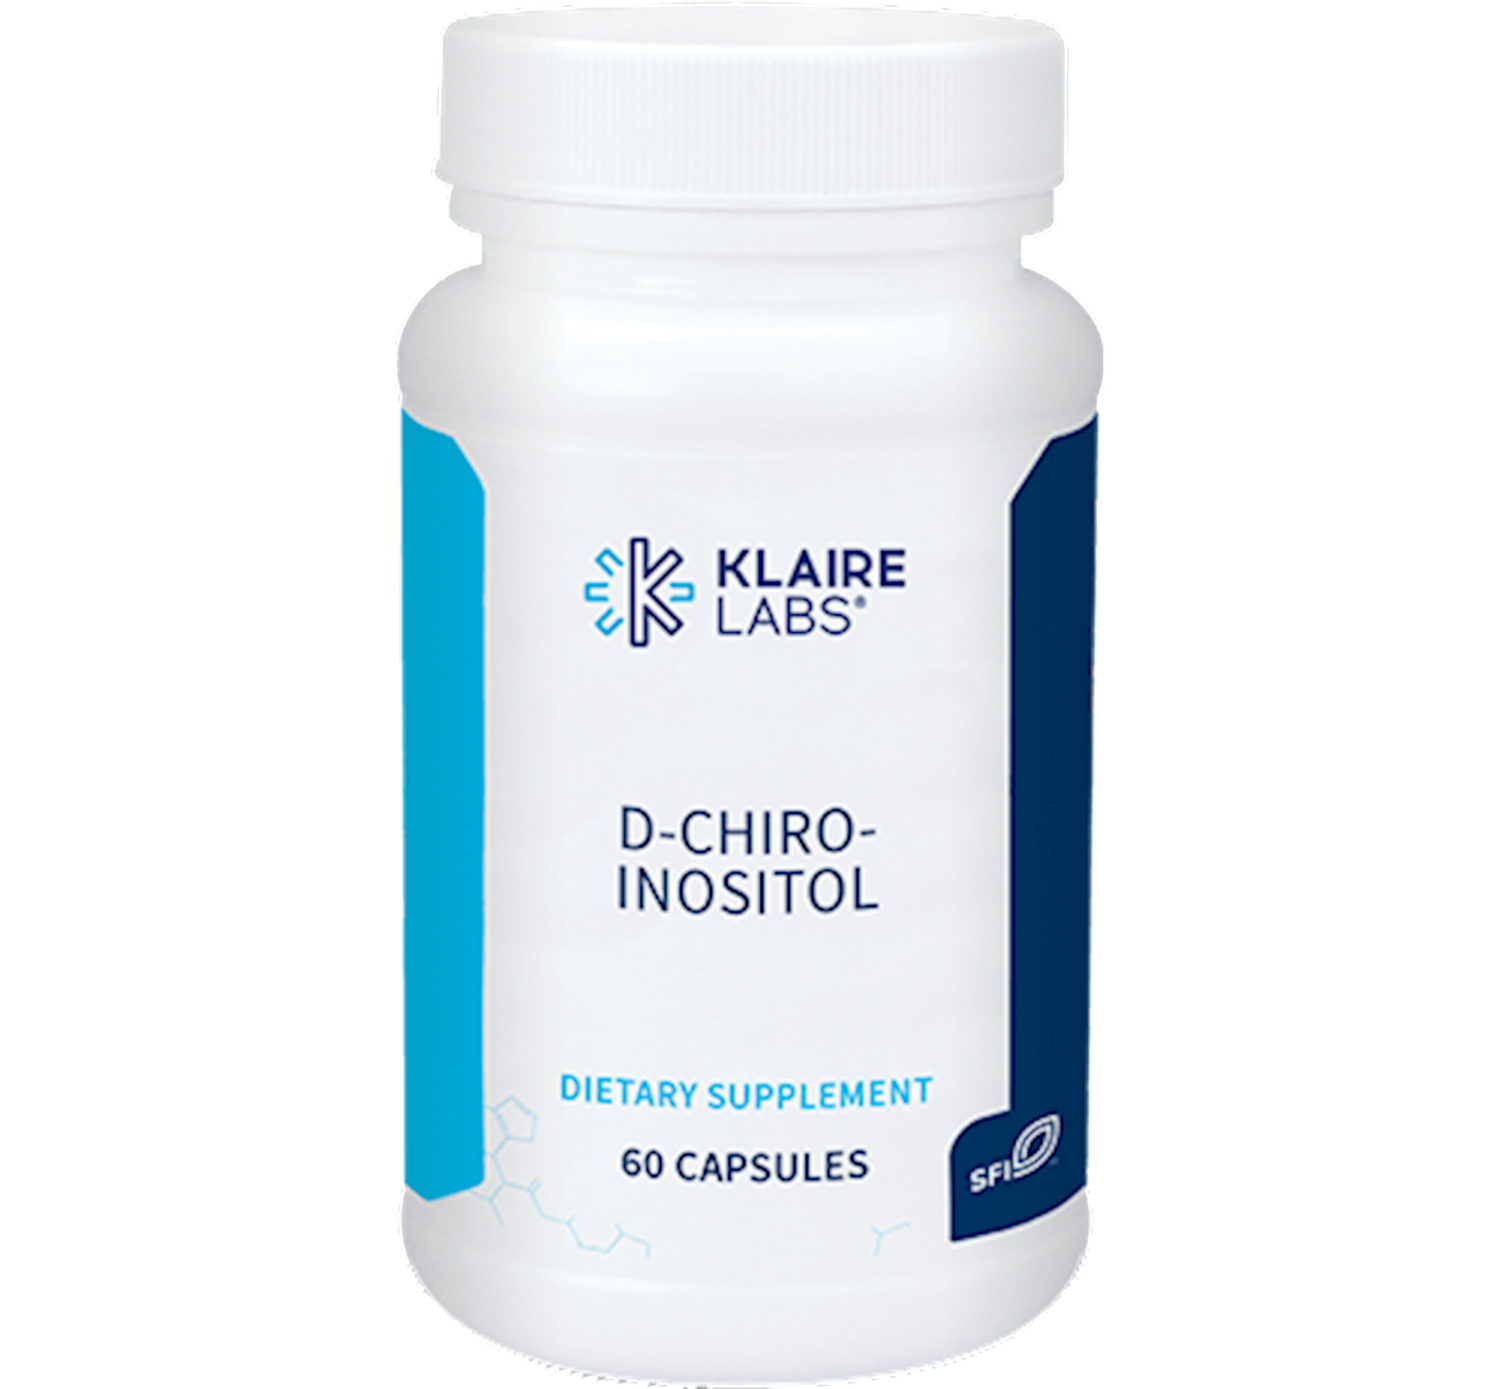 D-Chiro-Inositol 60 capsules Klaire Labs